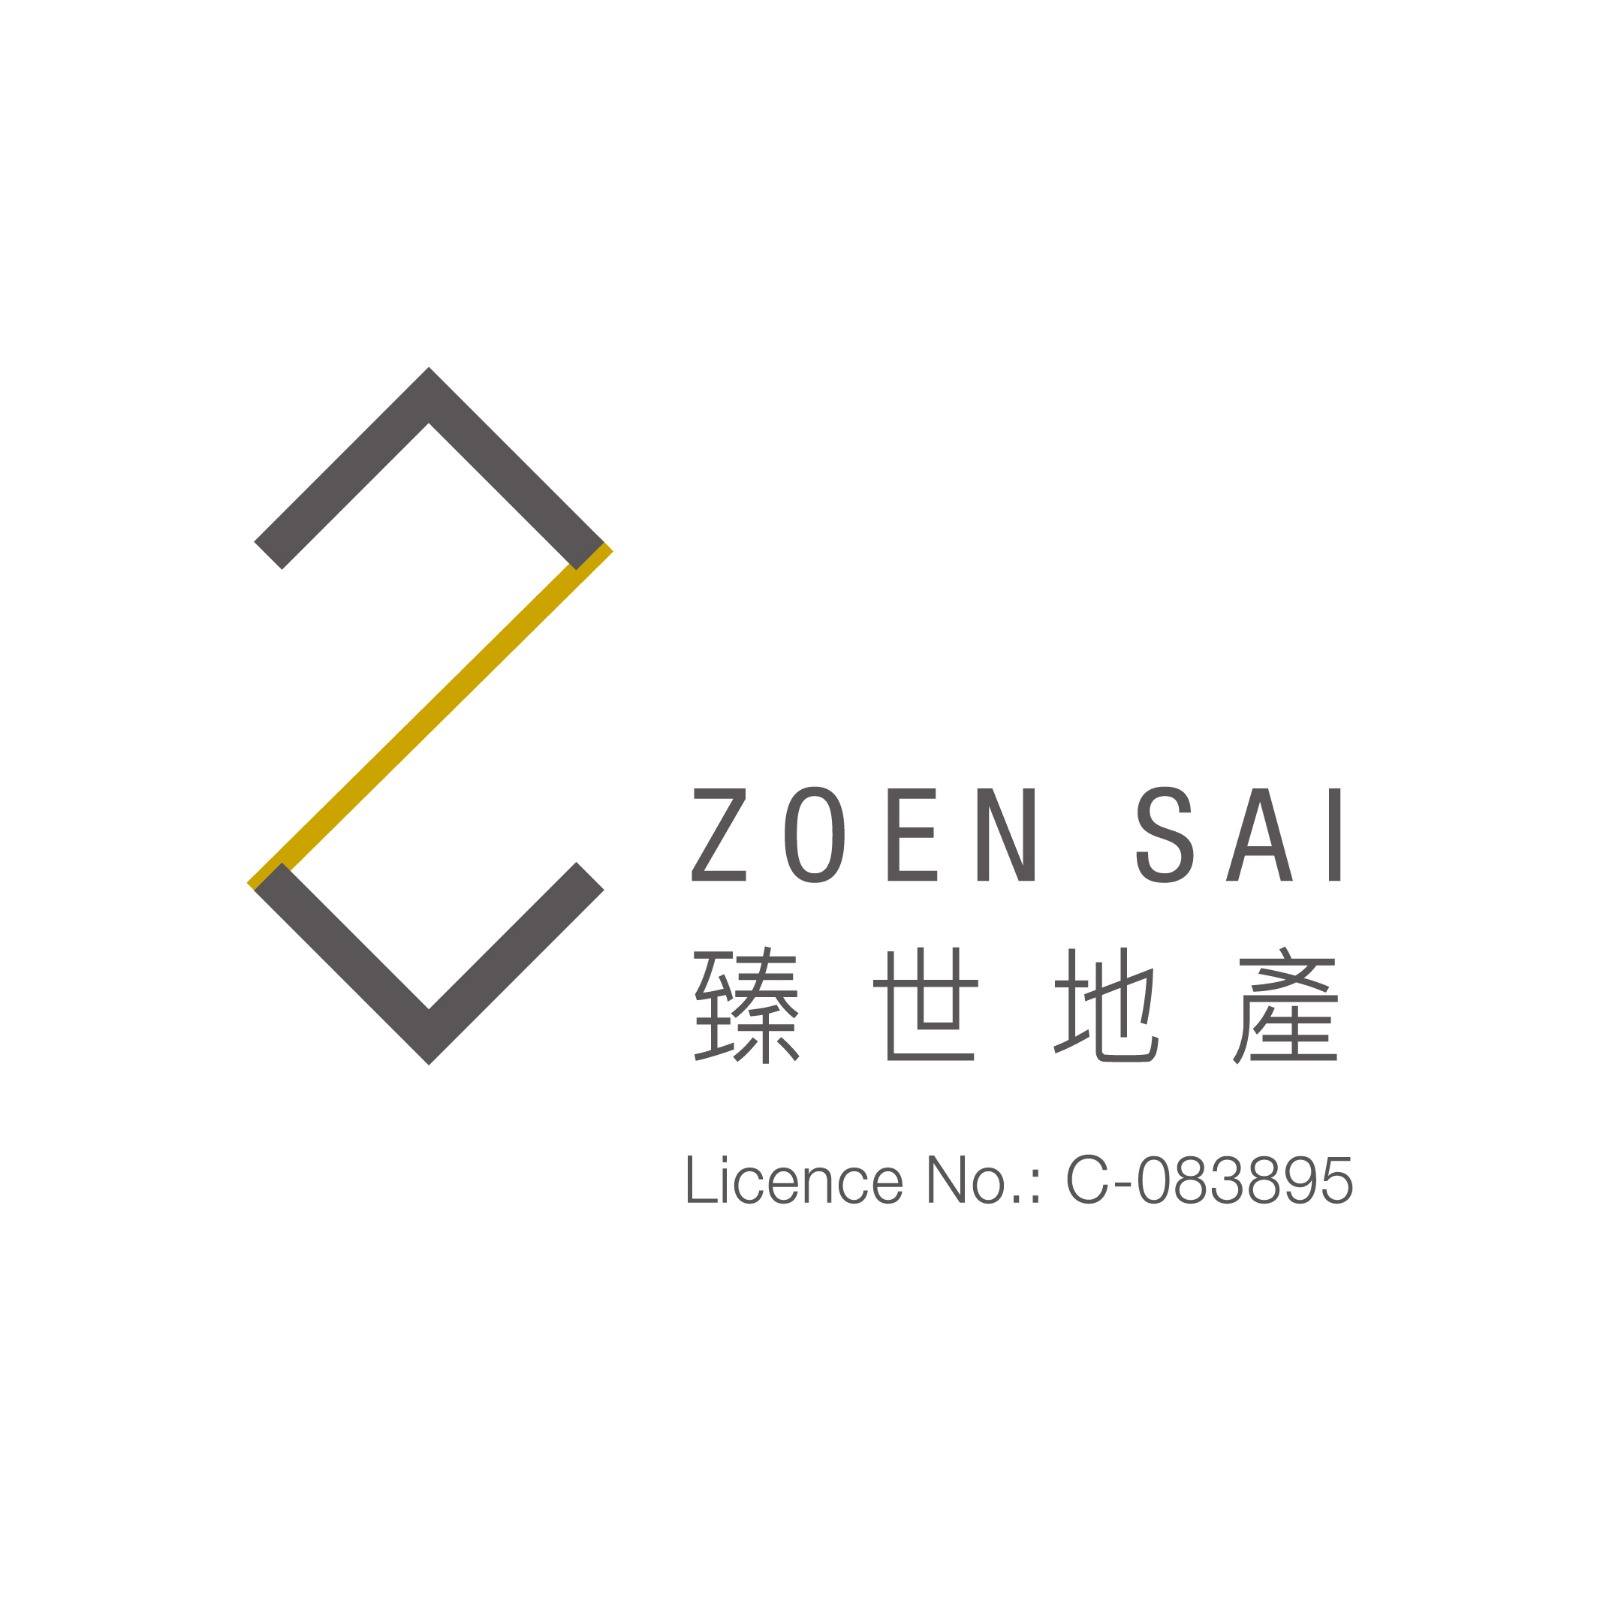 地產代理公司 Estate Agent: Zoen Sai Property 臻世地產